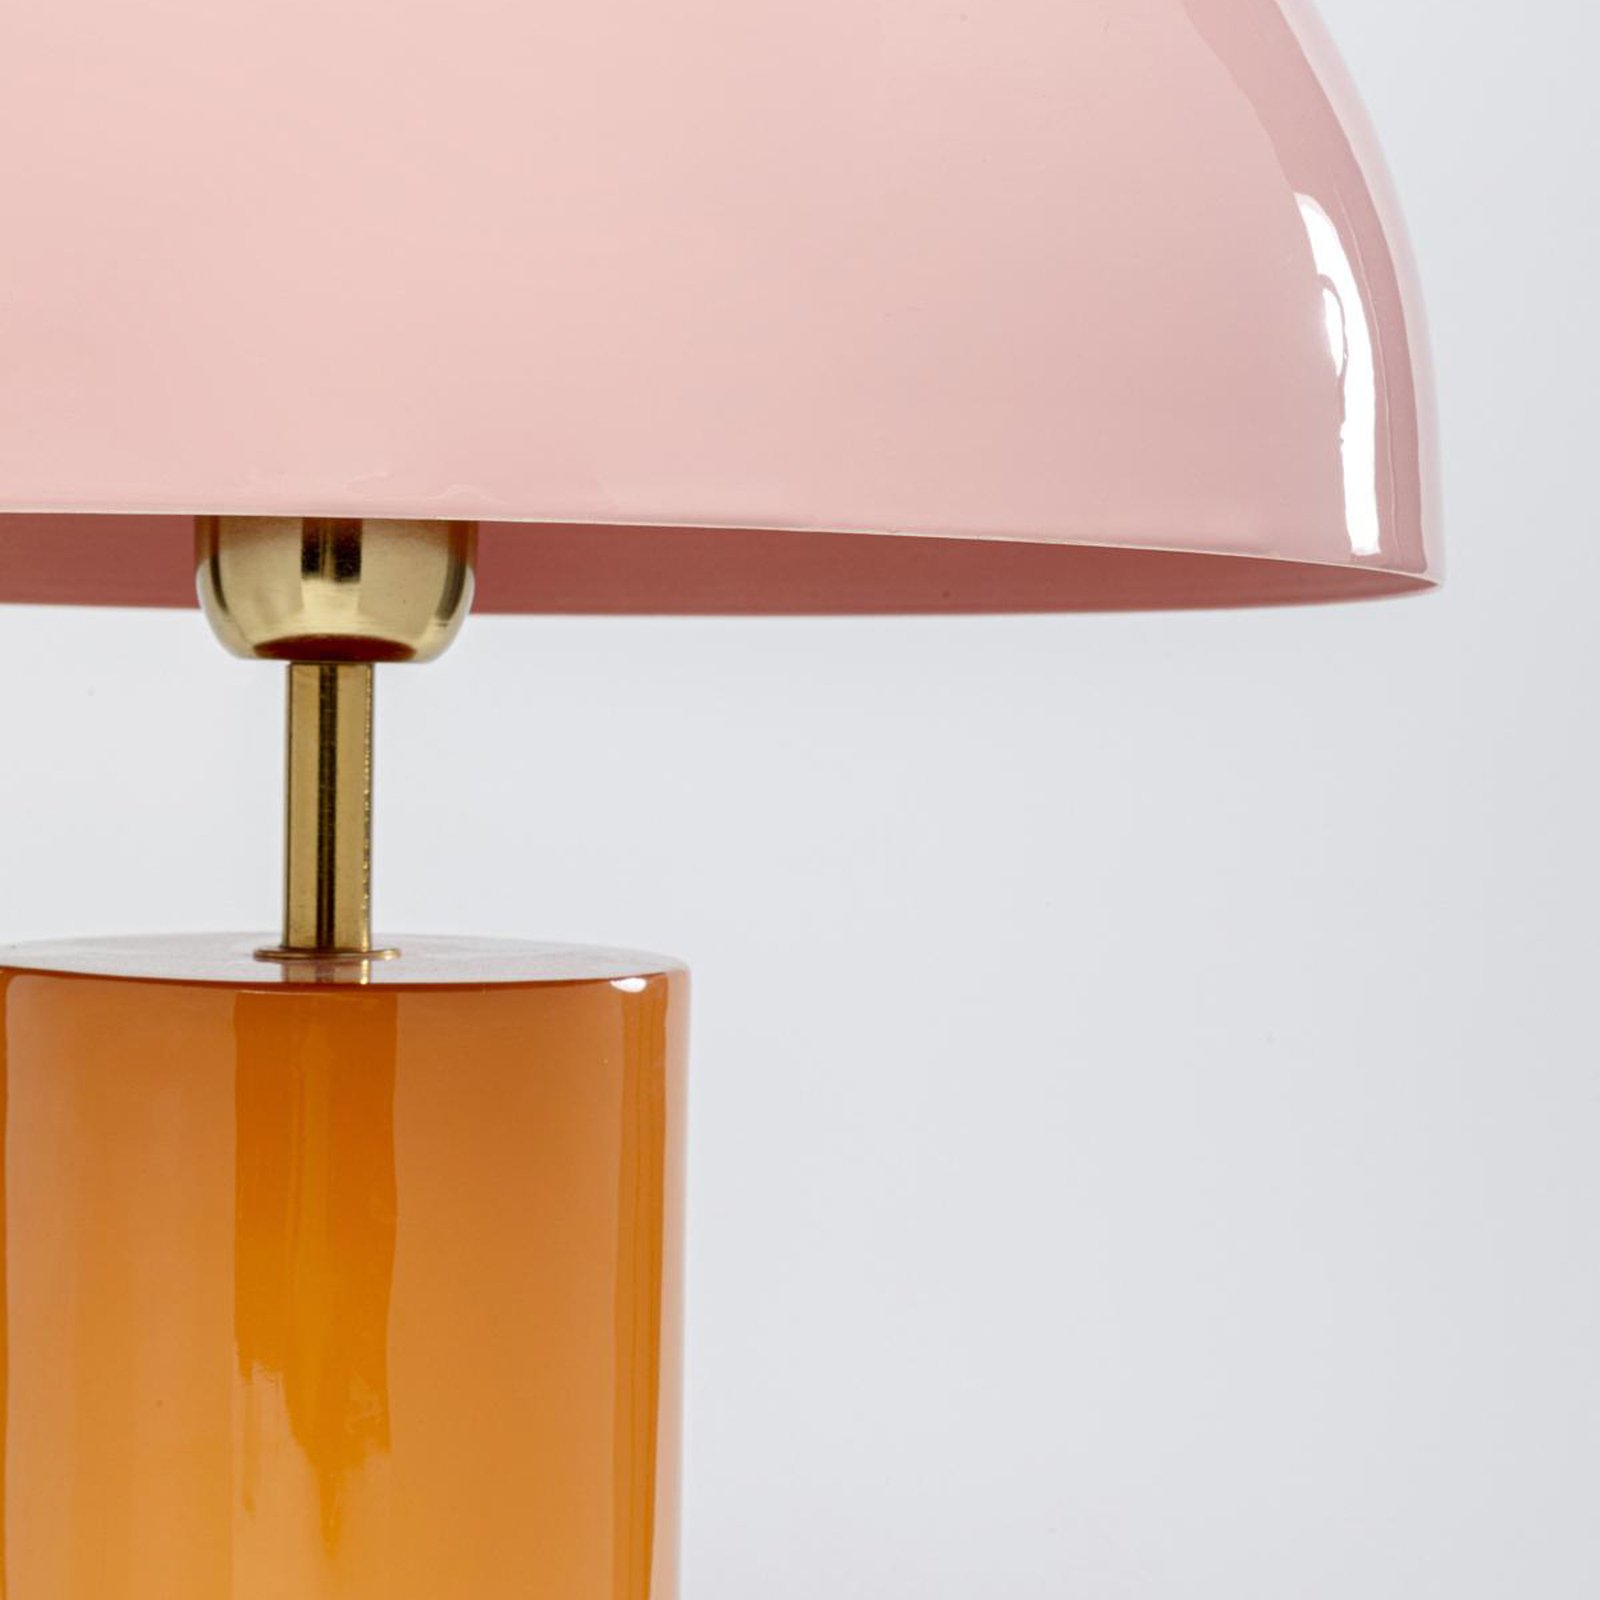 KARE Josy stalinė lempa, rožinė/oranžinė, plienas, aukštis 51 cm